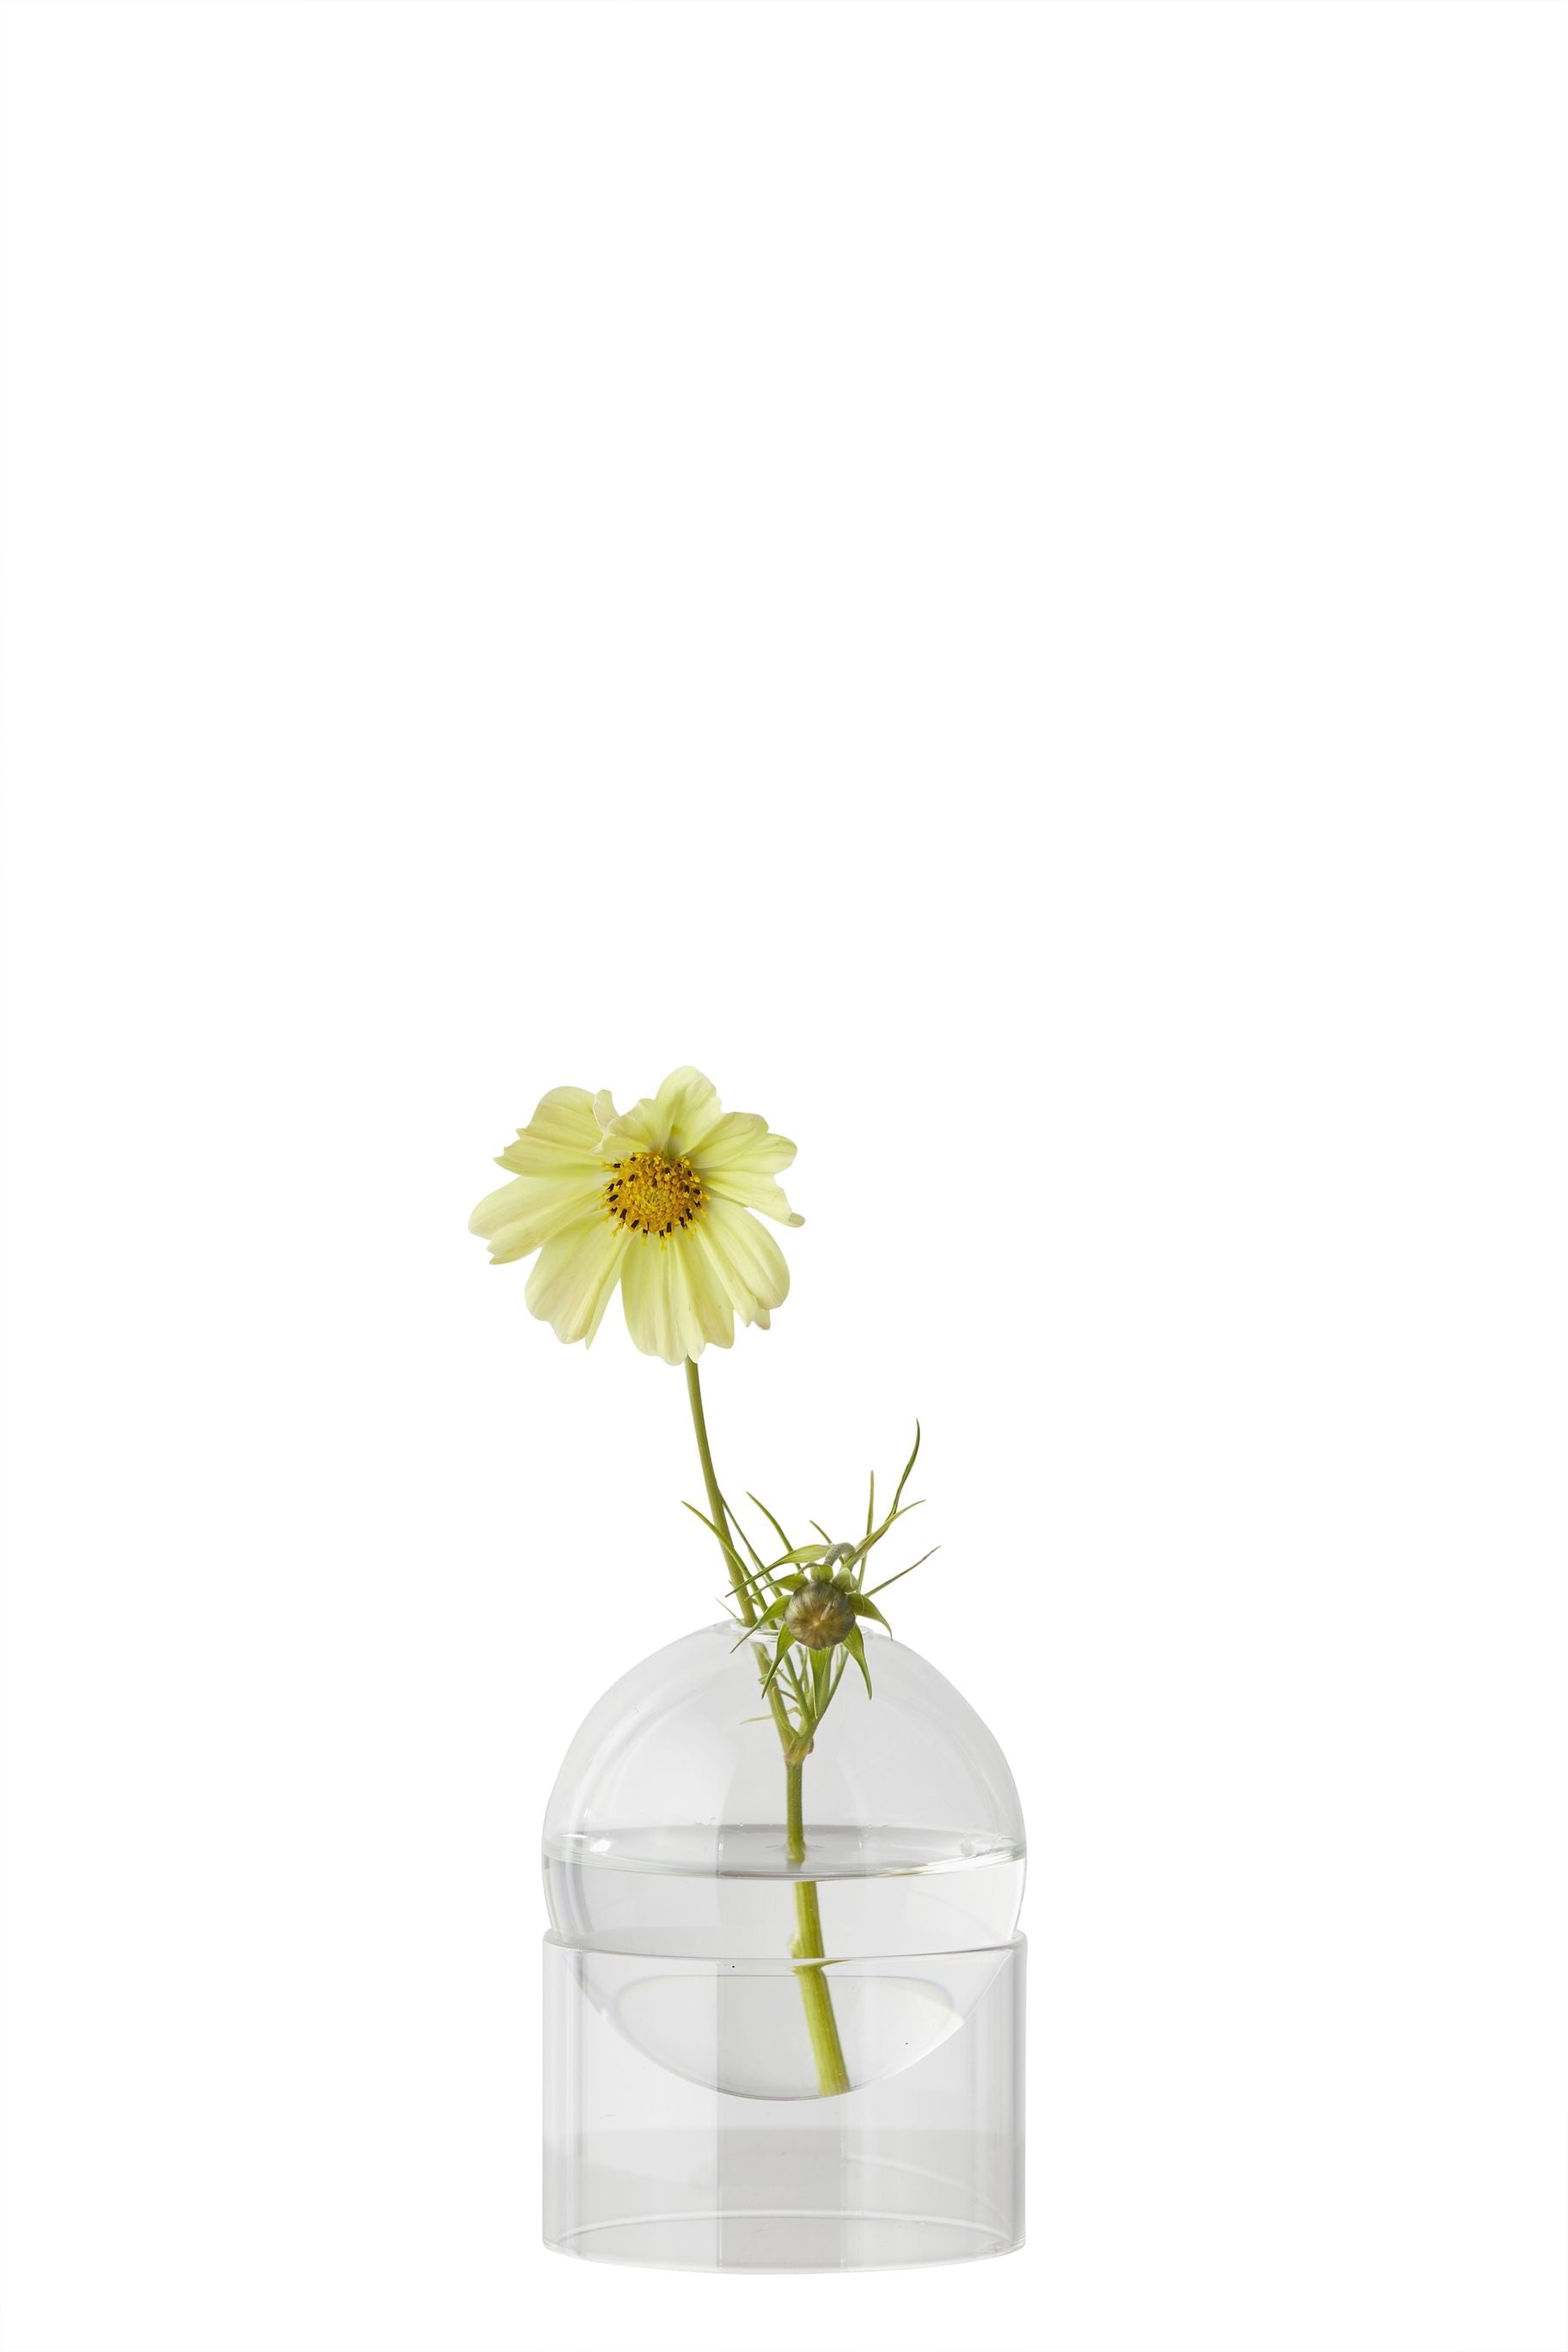 Studio over staande bloemen bellenvaas 10 cm, transparant